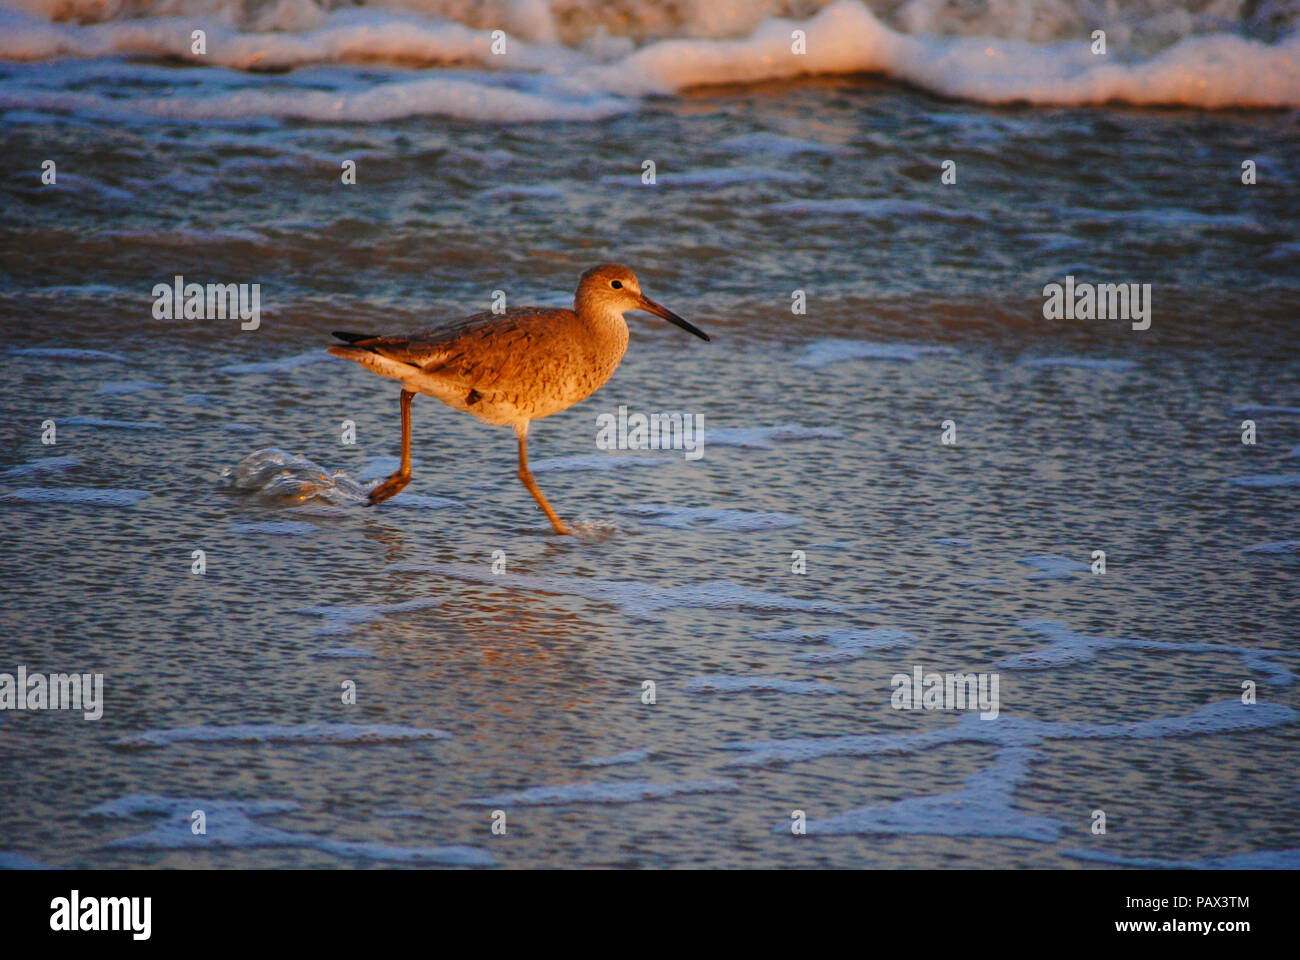 Schöner Vogel am Strand entlang laufen, als wenn Sie auf dem Wasser. Stockfoto